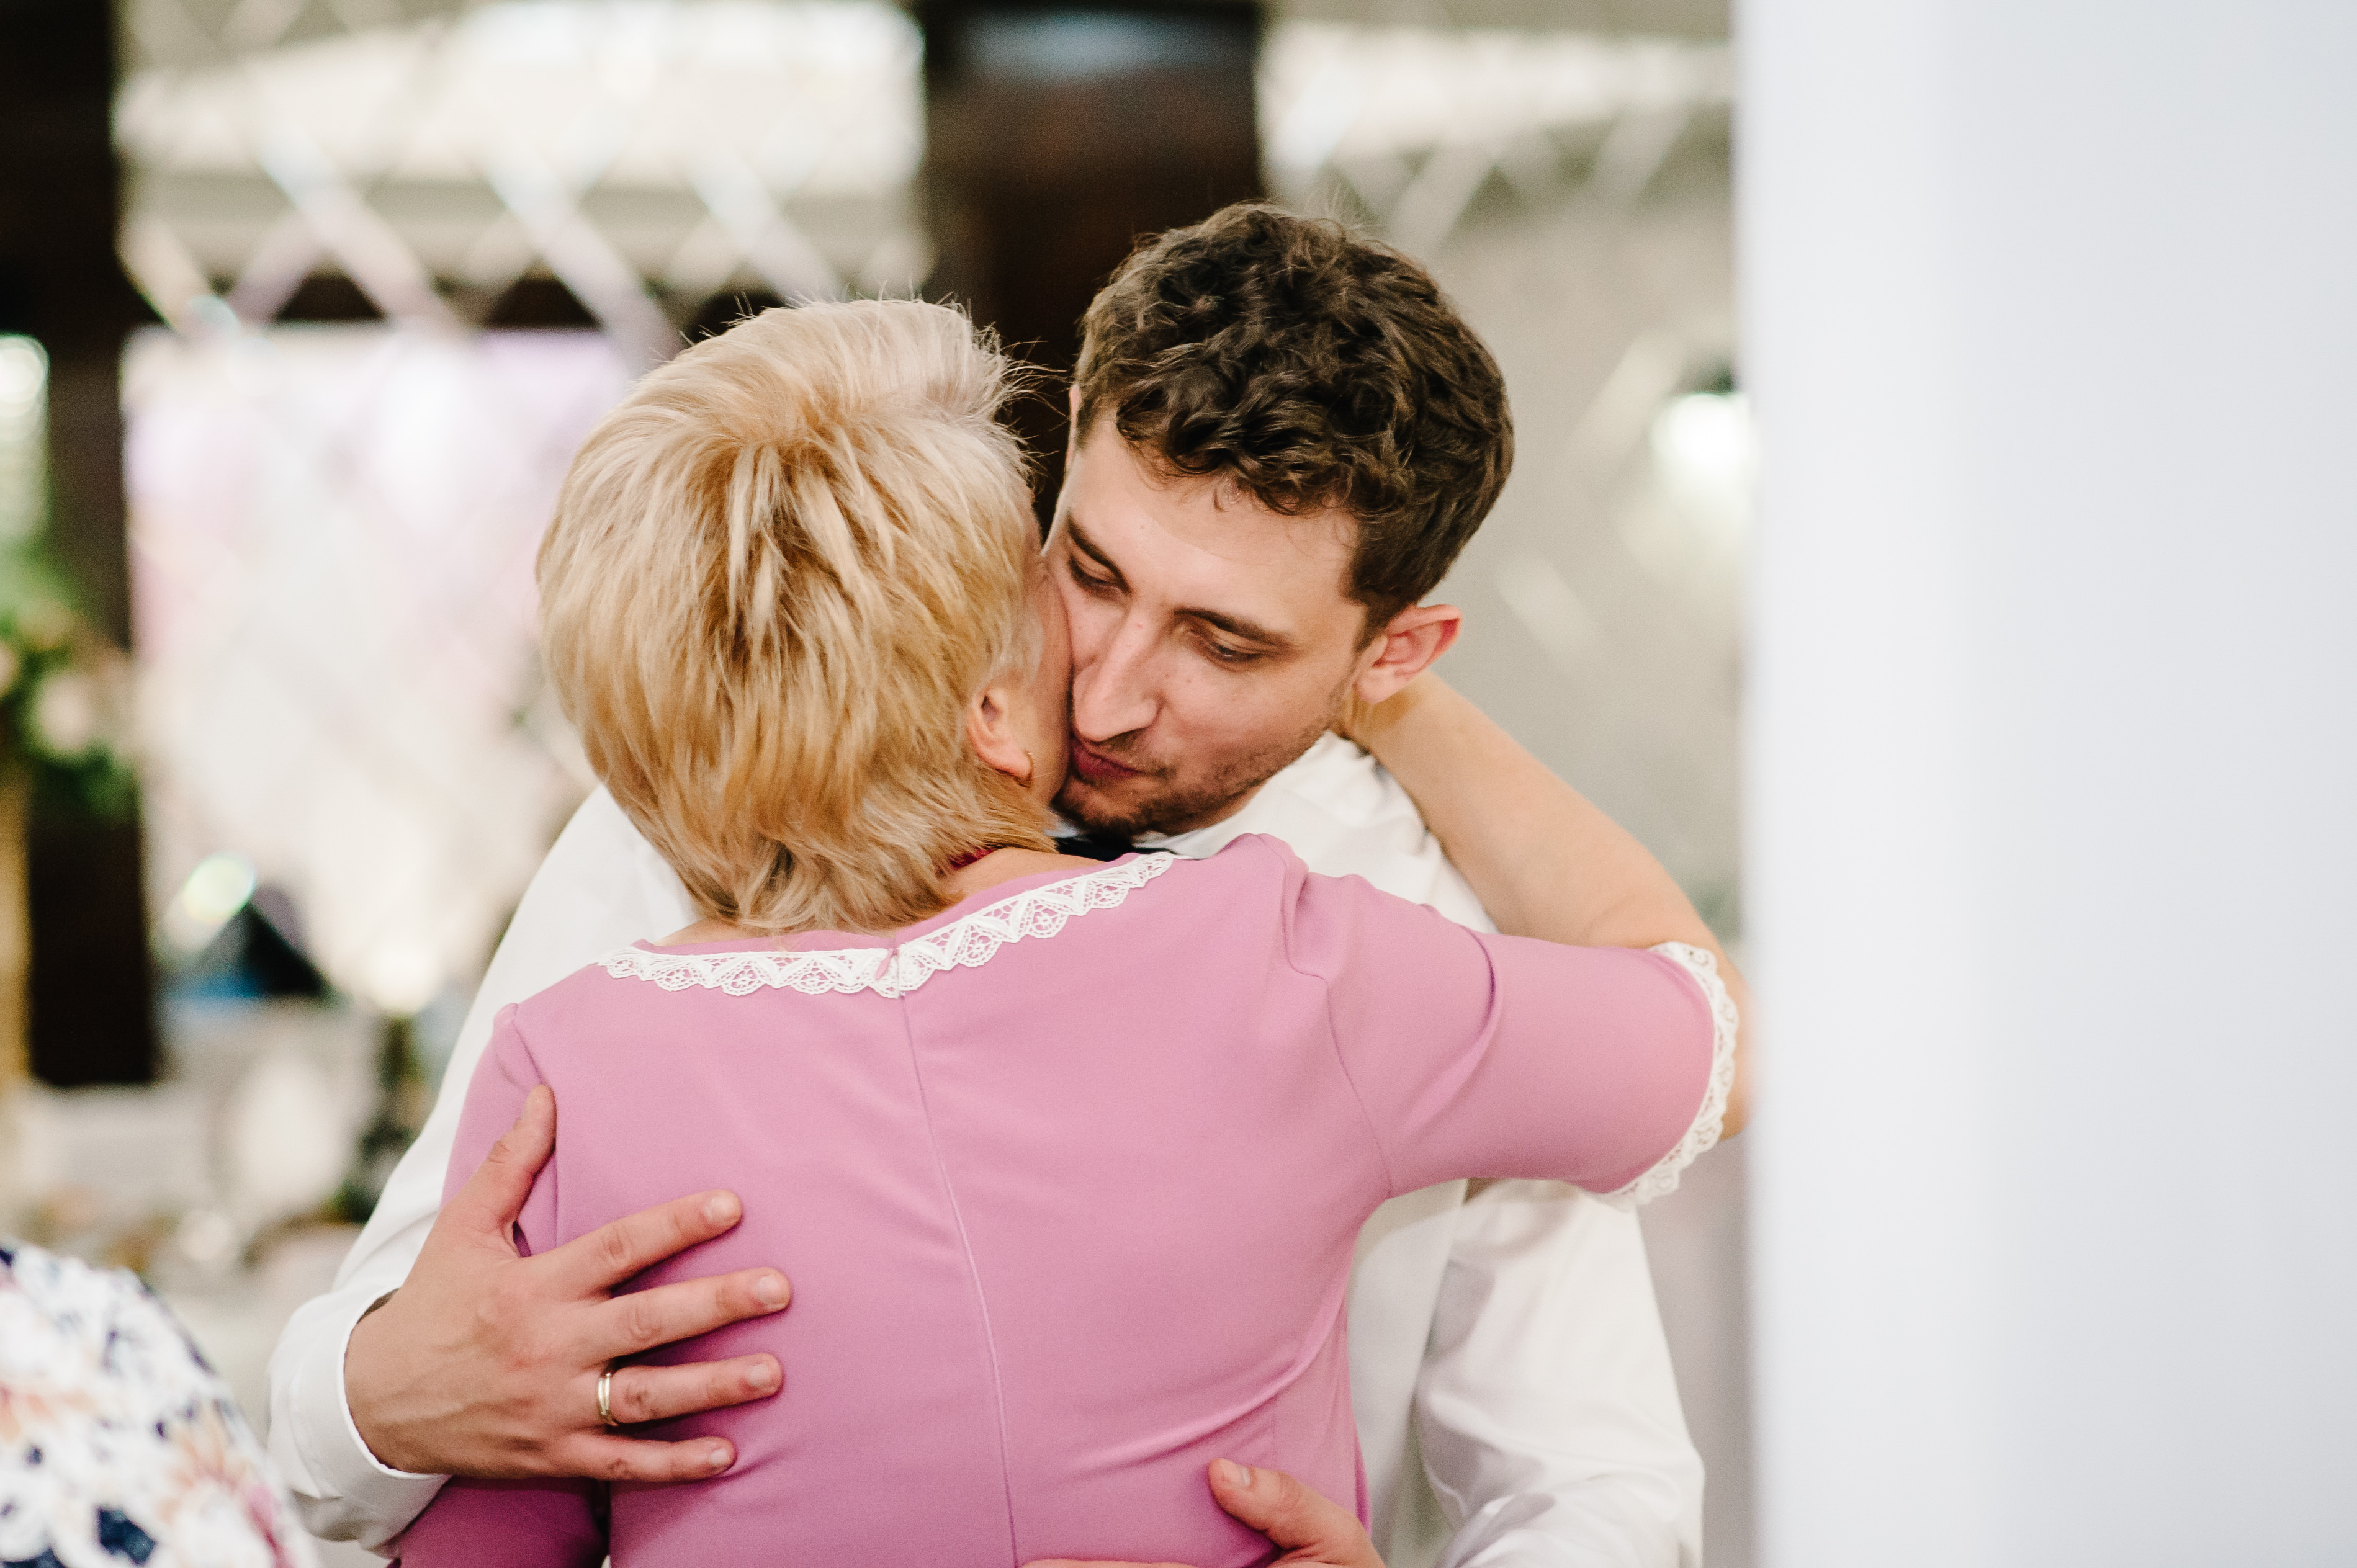 Mann, der seine Mutter umarmt | Quelle: Shutterstock